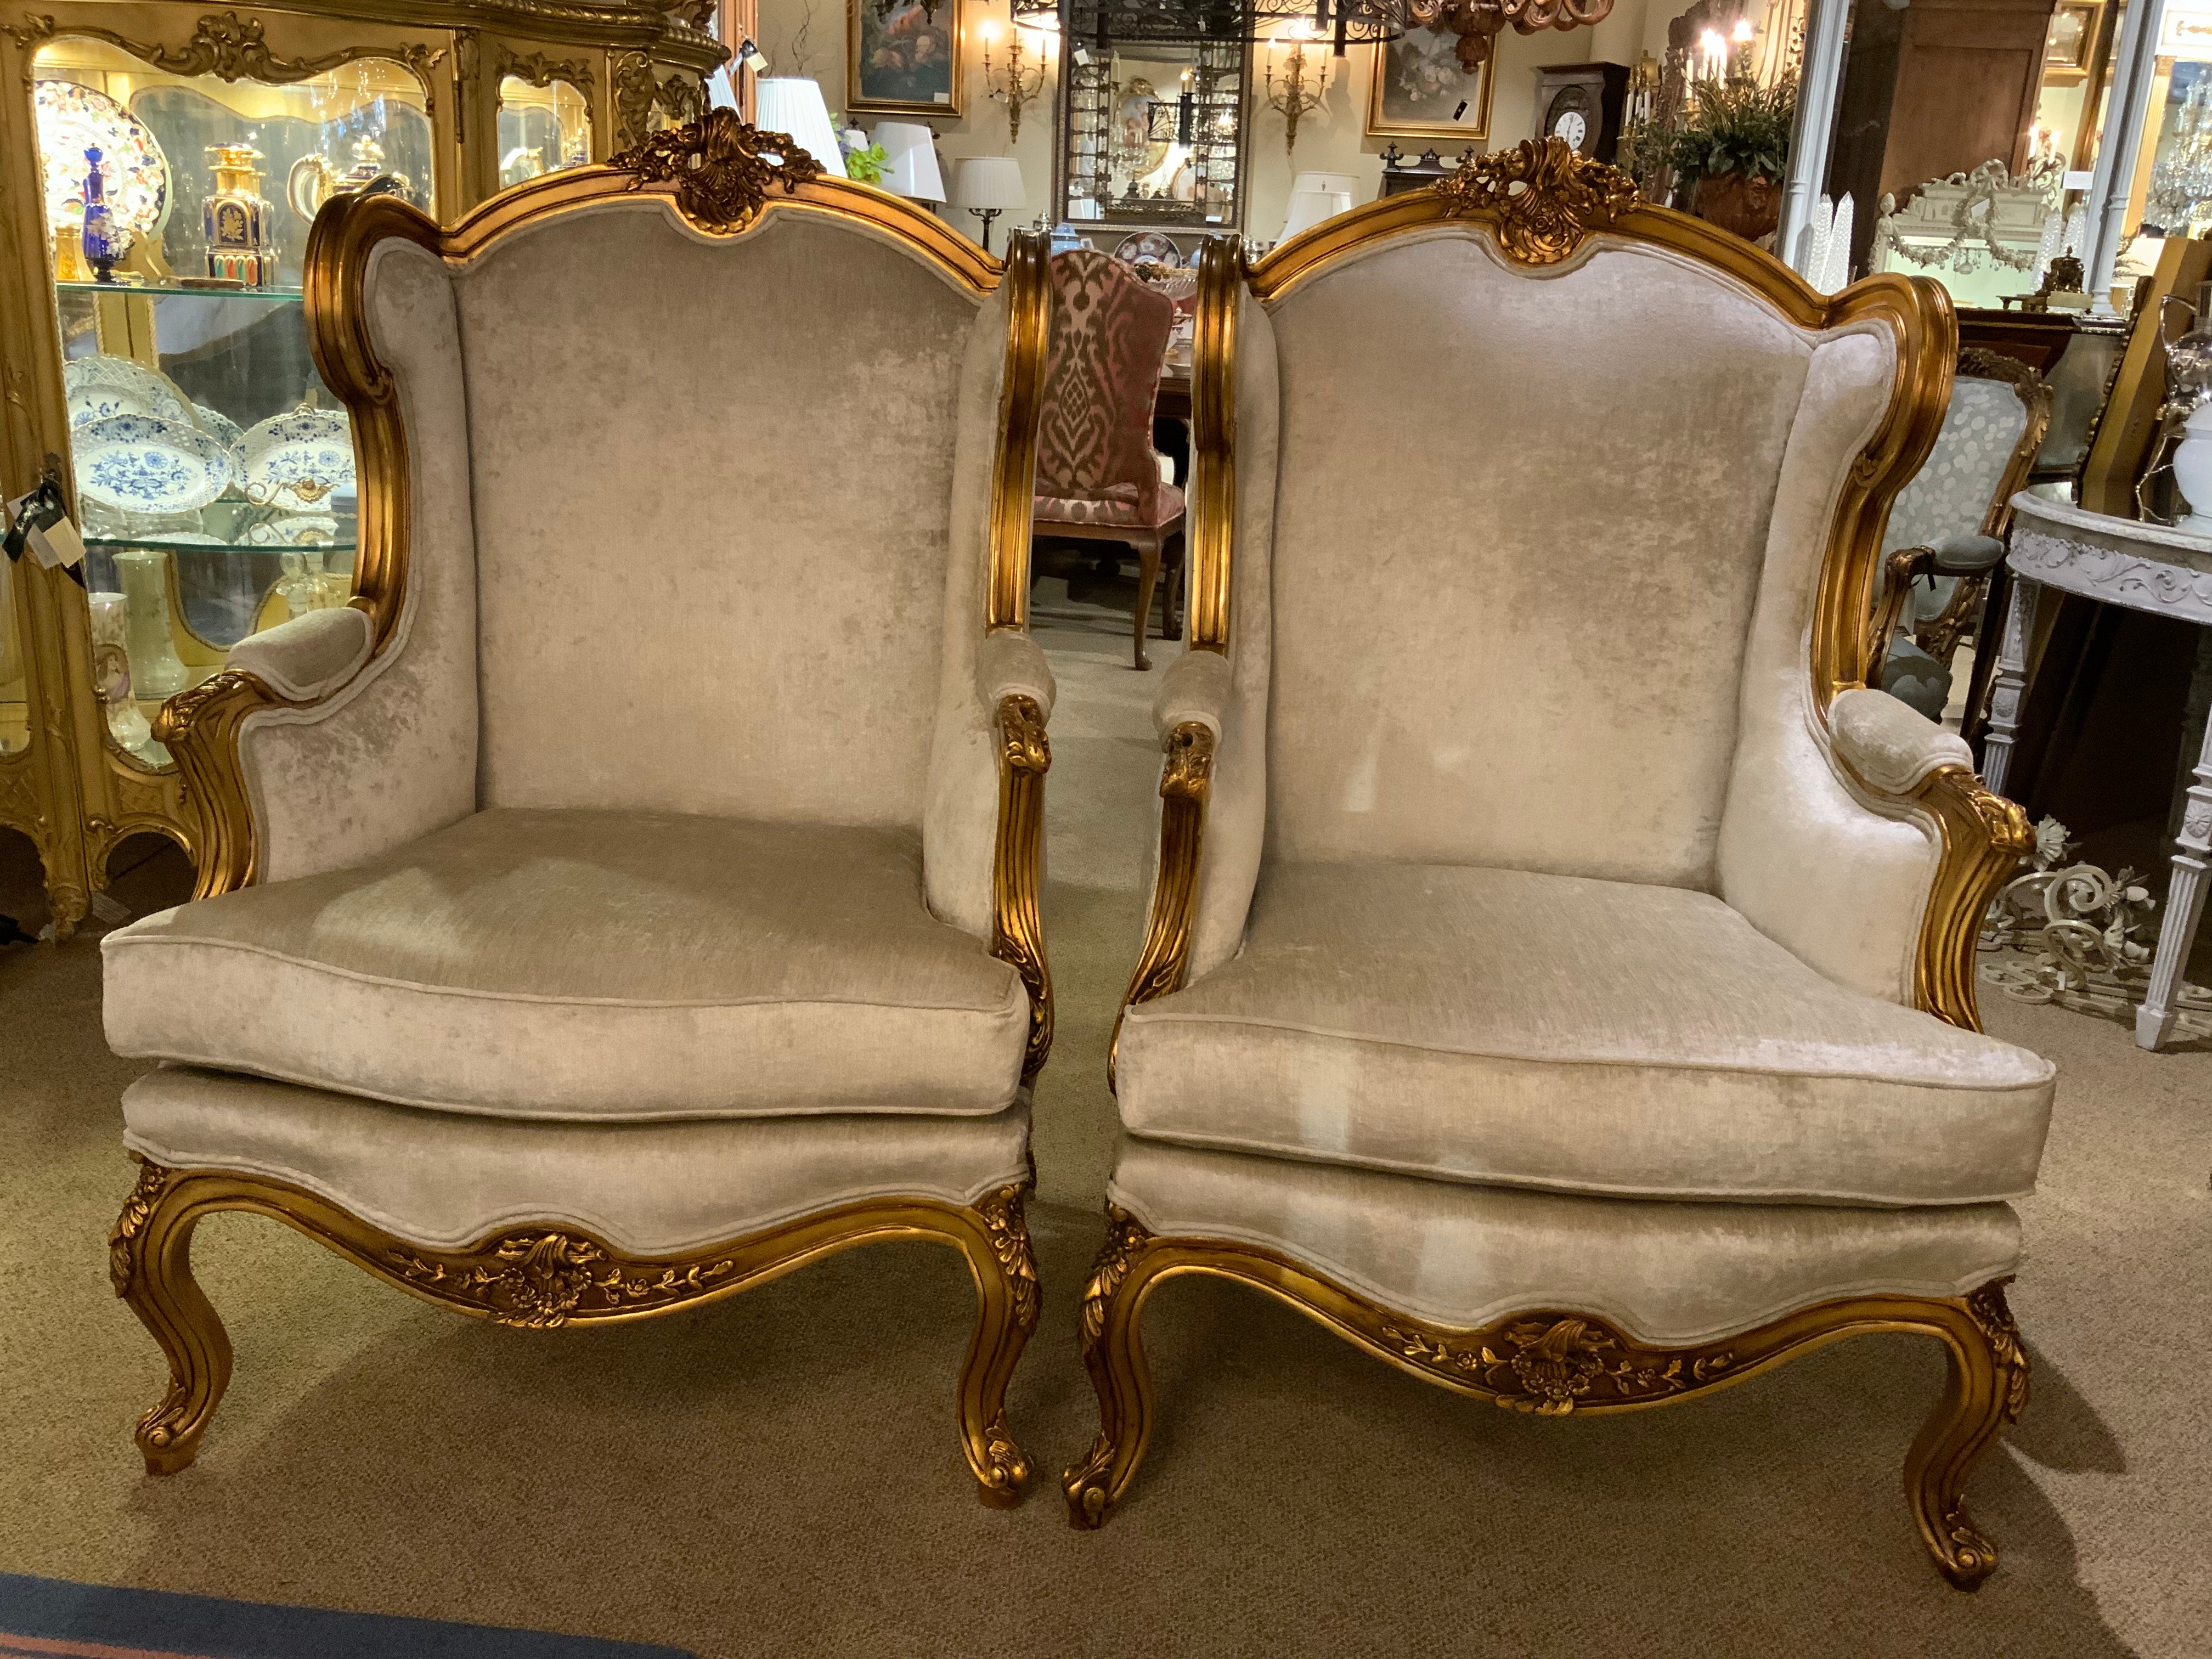 Paar vergoldete Stühle im Louis XV-Stil mit cremeweißer neuer Polsterung 
Die Schnitzerei ist sehr gut gemacht in großem Detail Ausstellung von Rollen und foliate
Design/One. Sie sind mit einem Polyschaumkissen gefüllt, das sehr bequem ist. 
Die